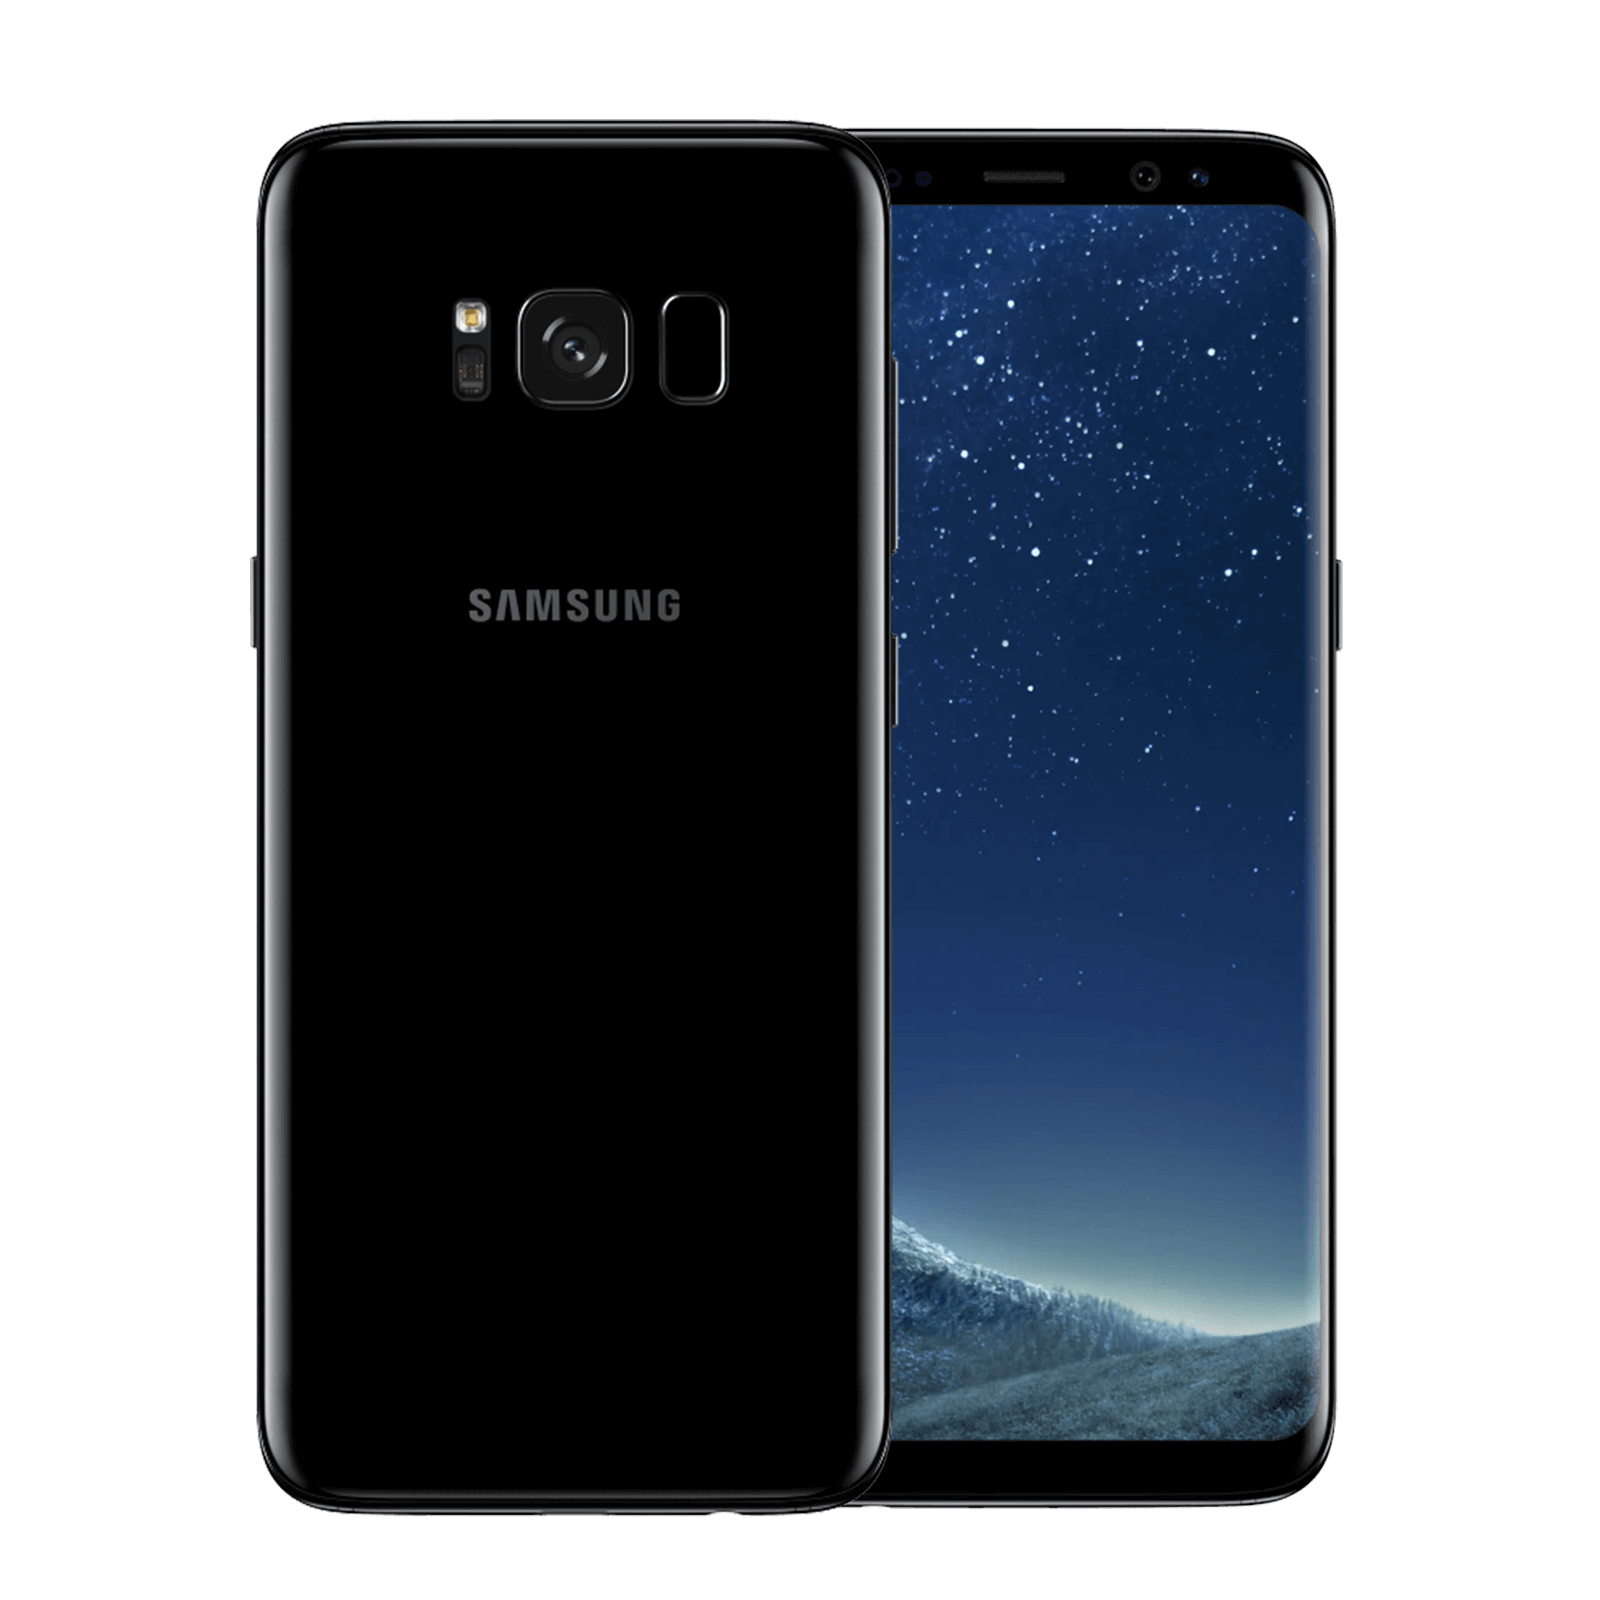 Samsung Galaxy S8 64GB Black Very good - Unlocked